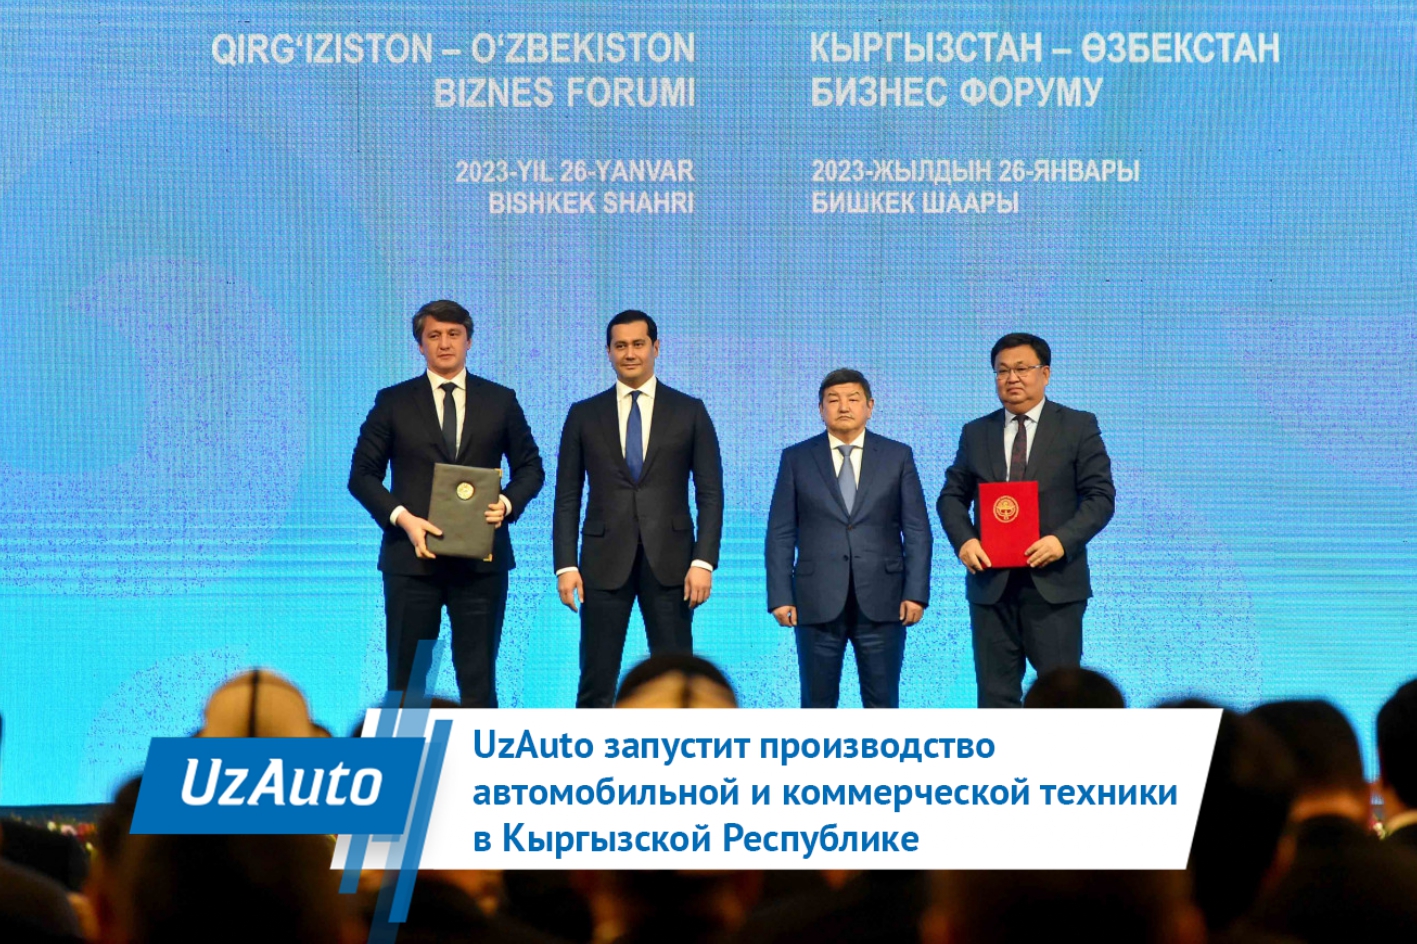 UzAuto запустит производство автомобильной и коммерческой техники в Кыргызстане